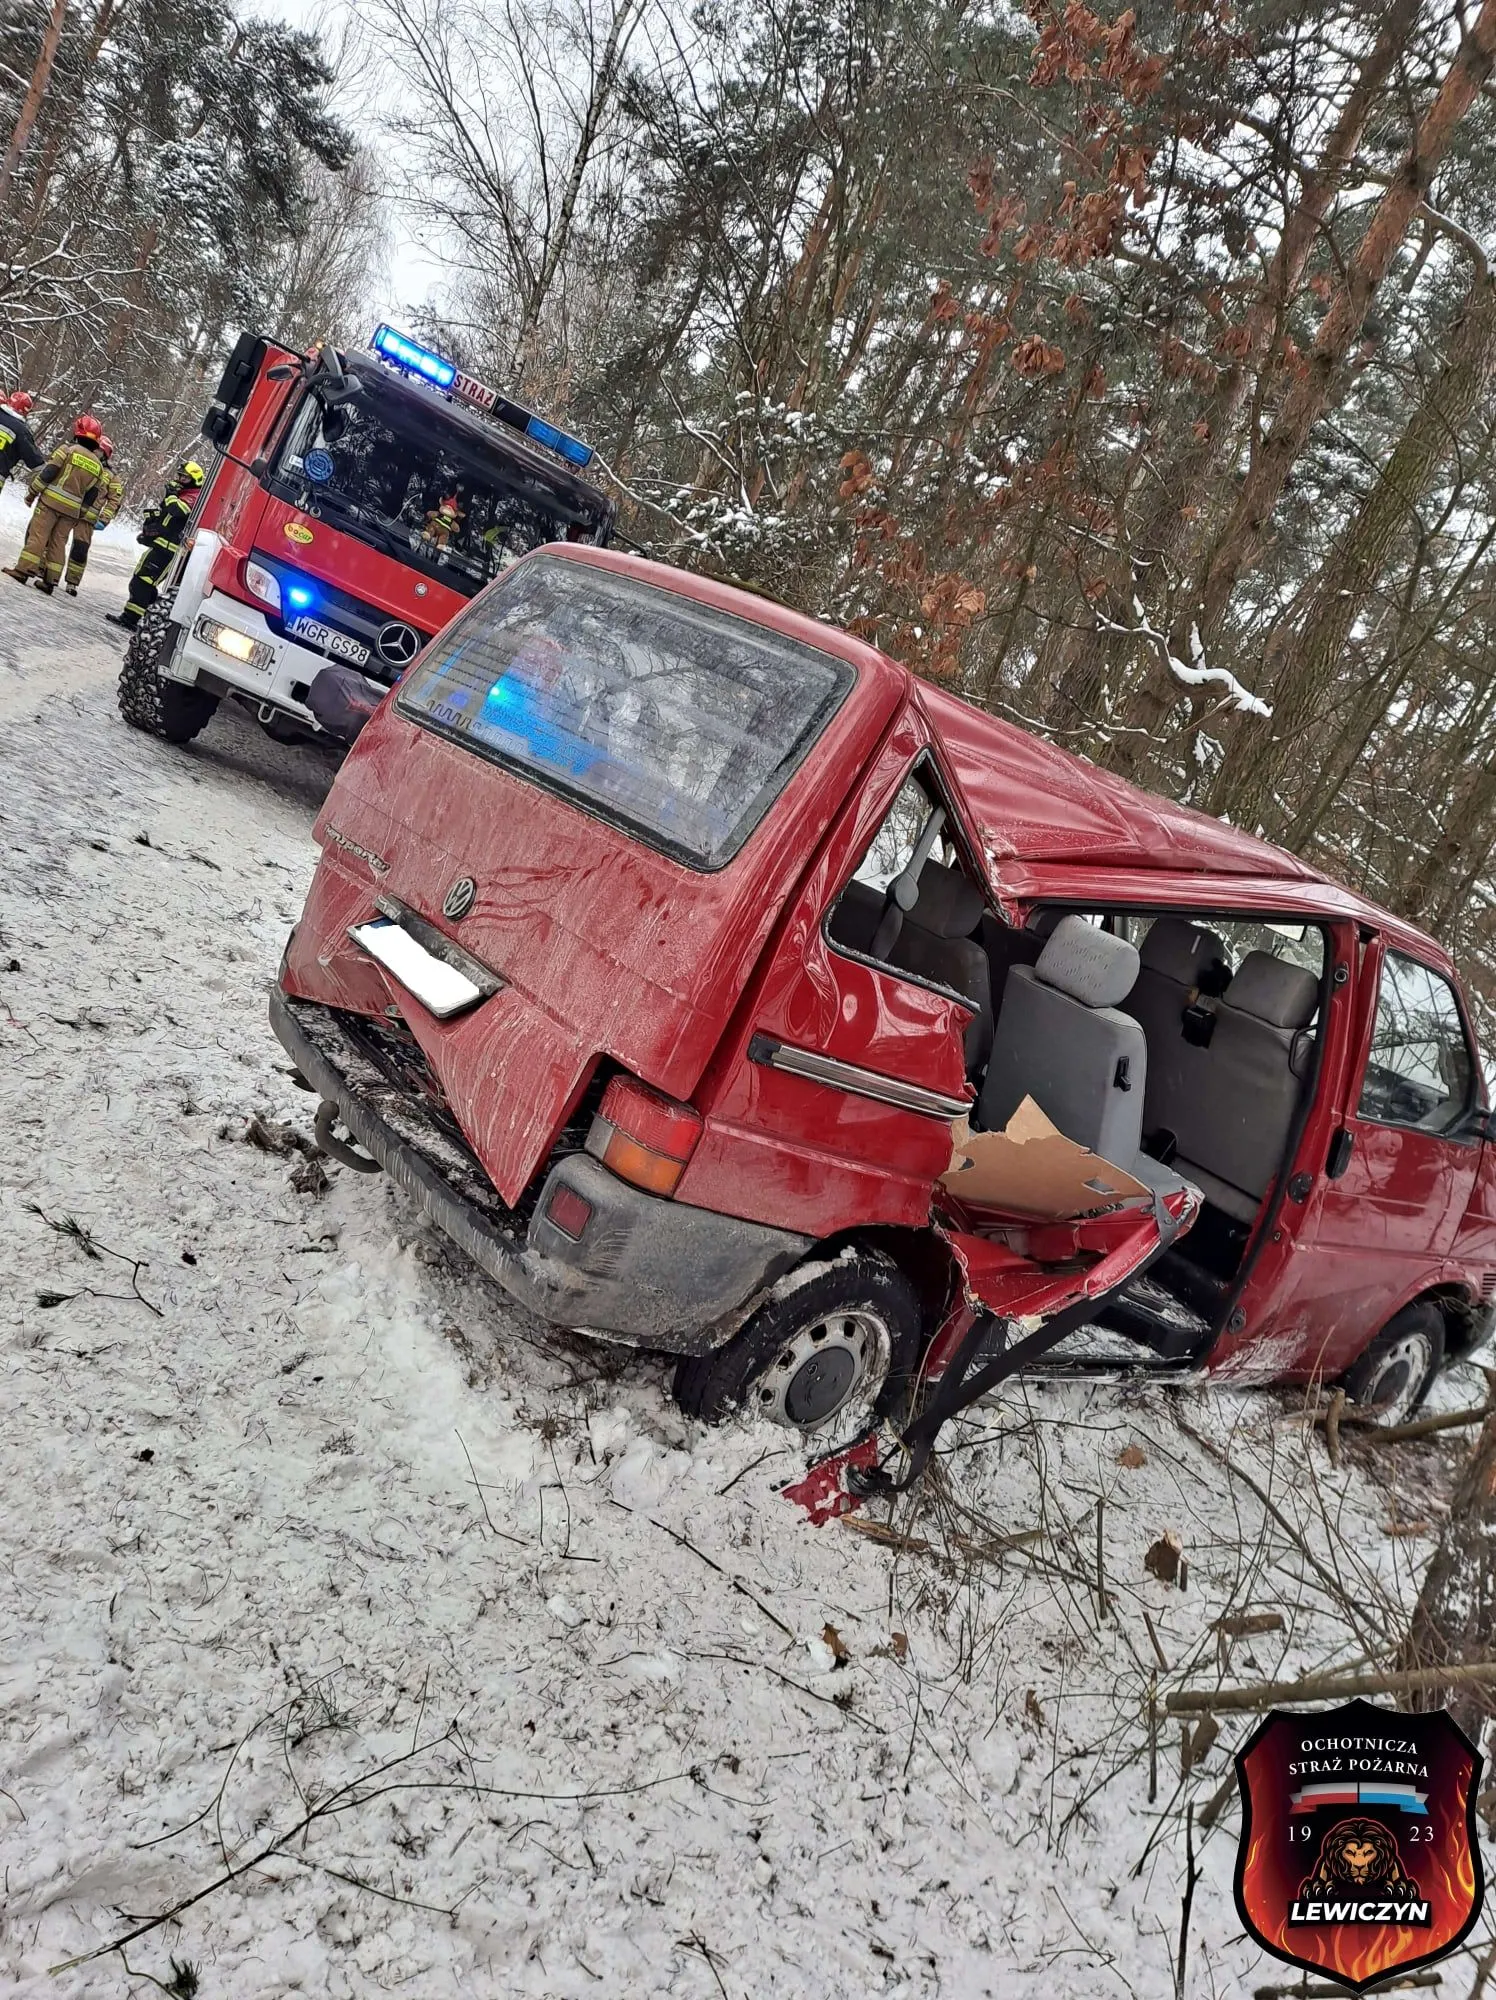 Фото з місця аварії у Польщі